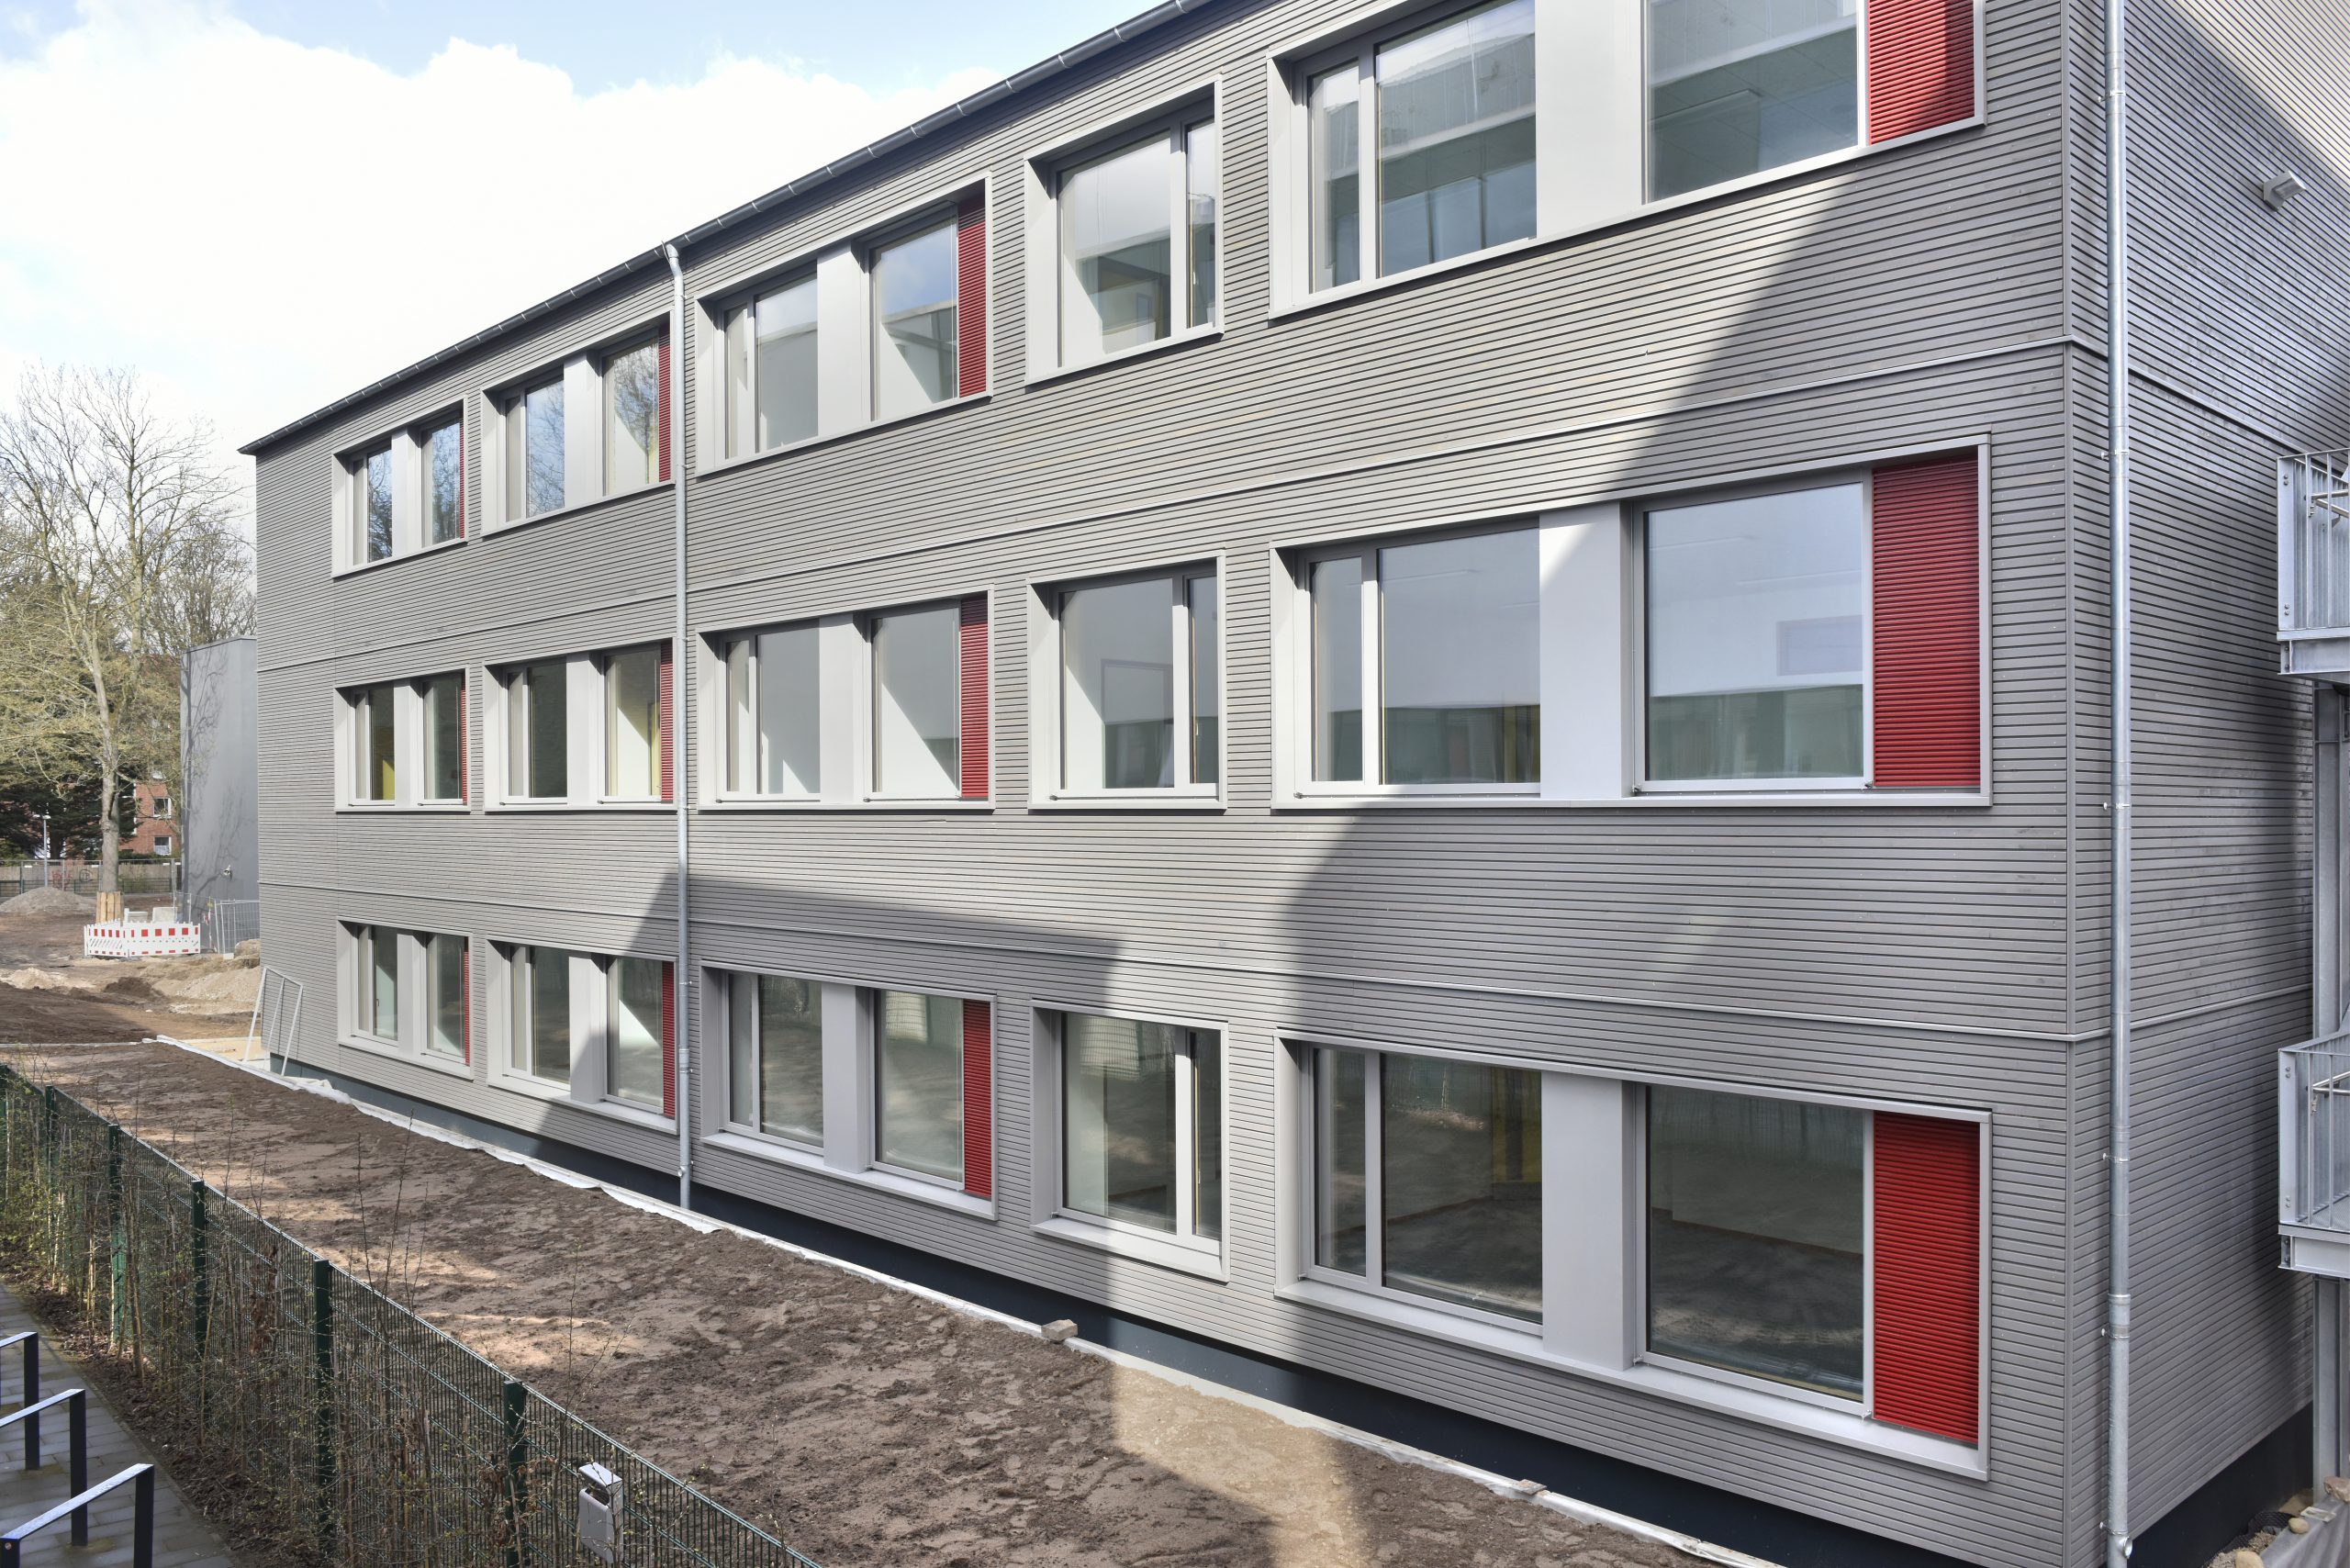 Simples Gerüst, kurze Bauzeit, anpassbare Optik - so sieht Hamburgs neue Standard-Schule aus.